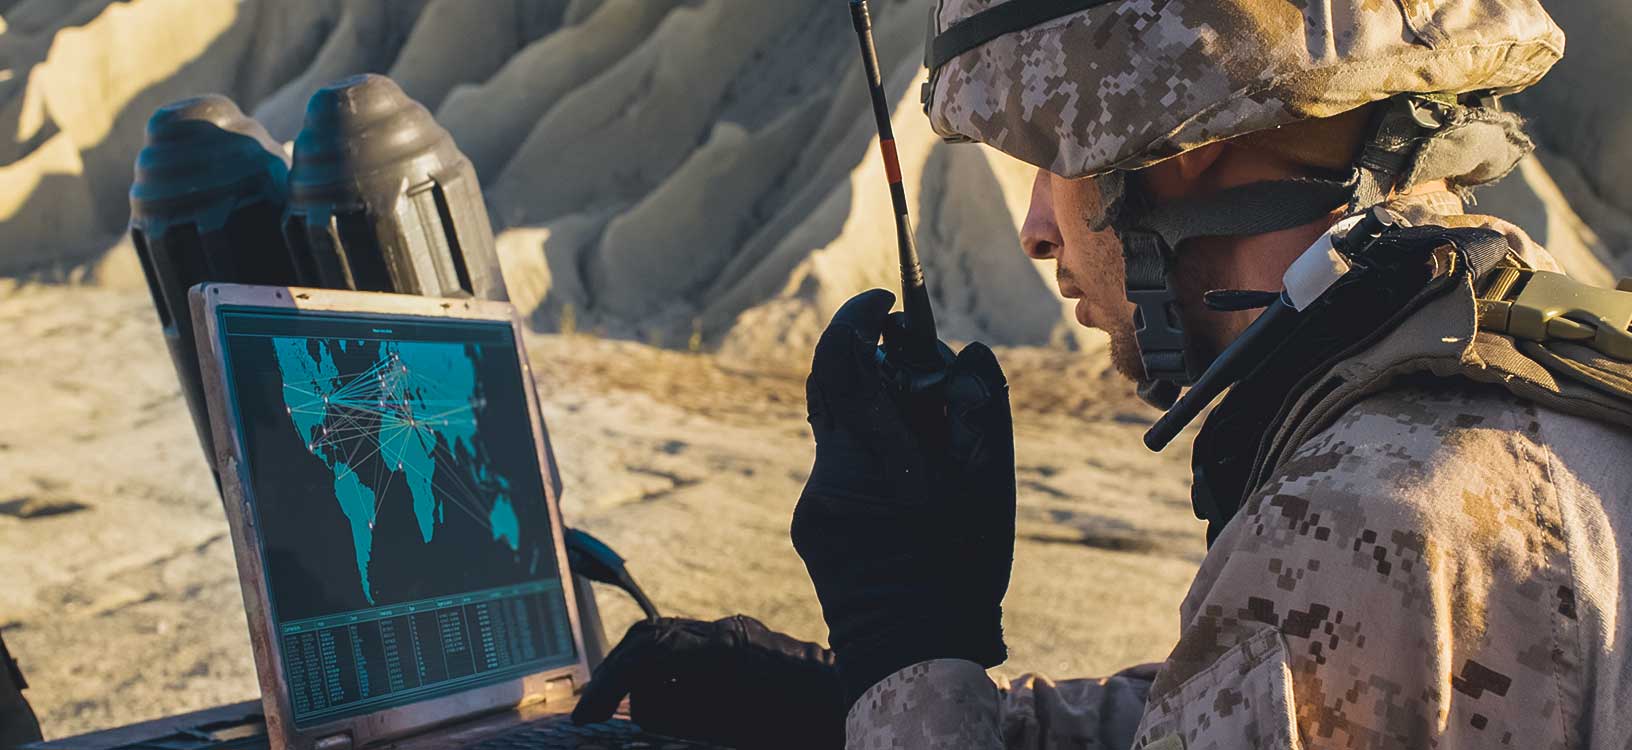 Soldaten verwenden Laptop und Funkgerät zur Kommunikation während eines Militäreinsatzes in der Wüste